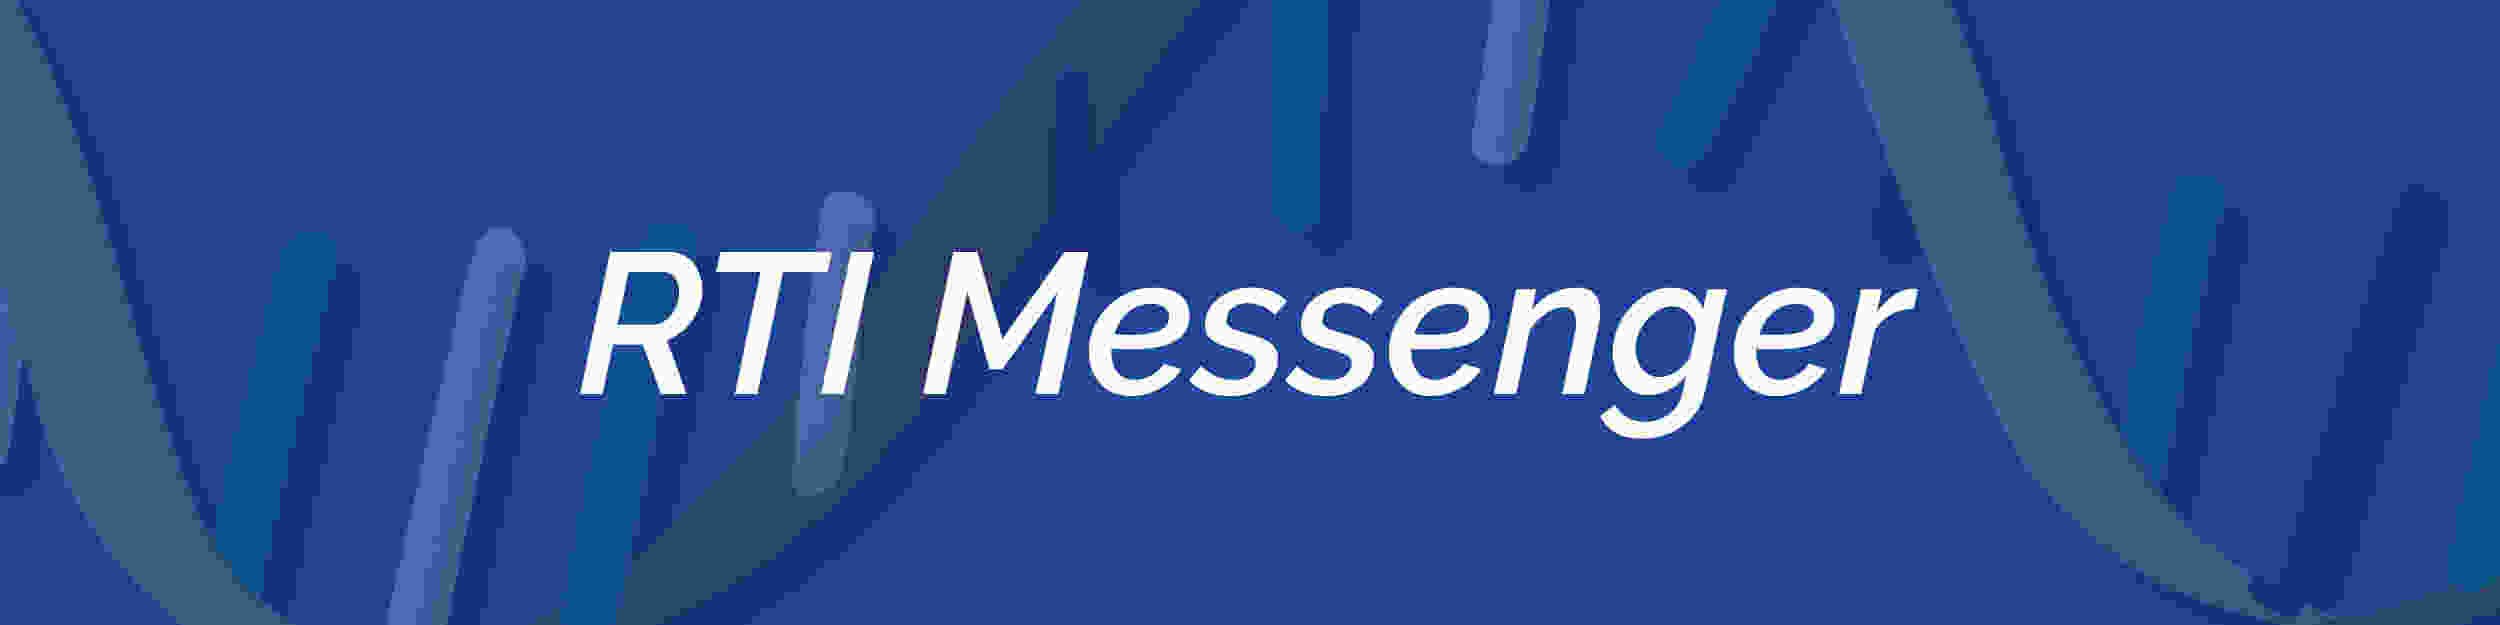 RTI Messenger Banner.jpg